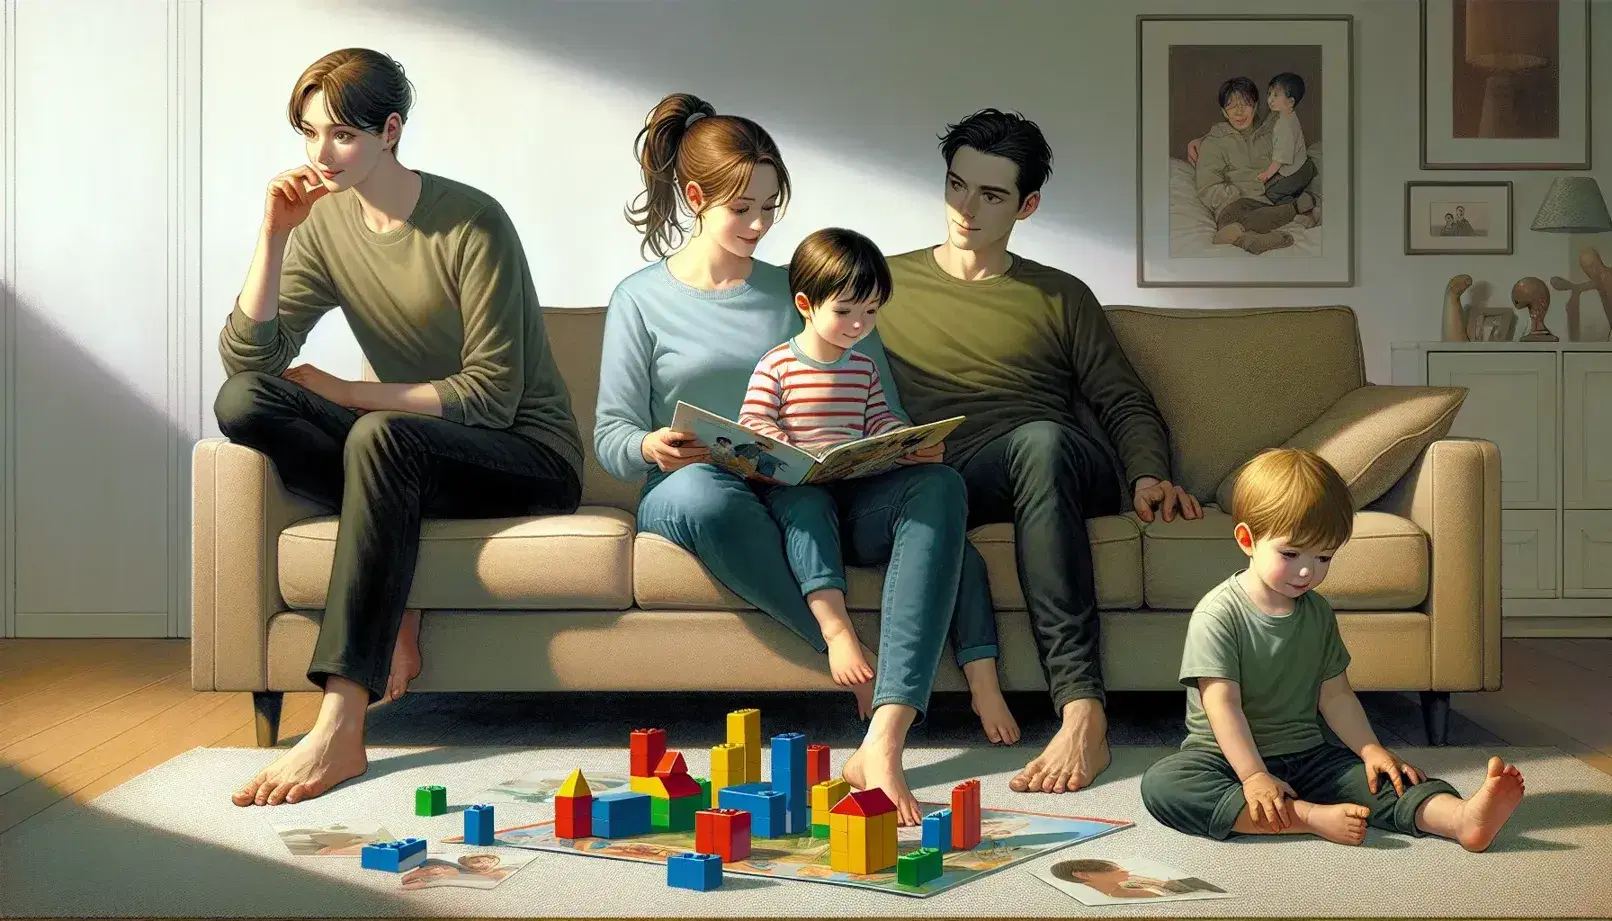 Familia disfrutando tiempo juntos en casa, madre leyendo a niño pequeño en sofá, padre apoyado y otro hijo jugando con bloques de colores.